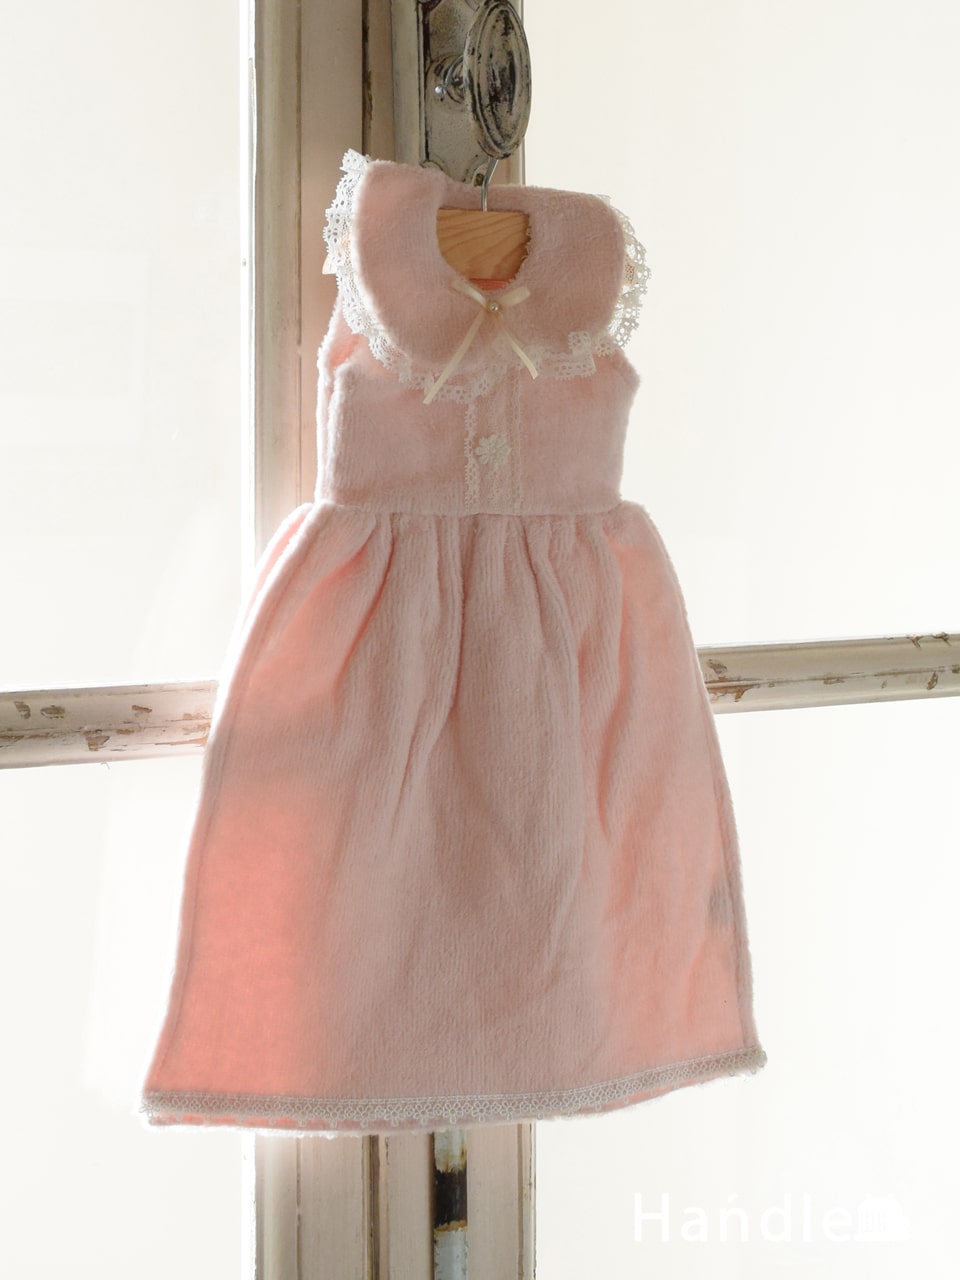 ベビードレス型のおしゃれなタオル、ハンガー付きのドレスタオル（PK） (n20-164)